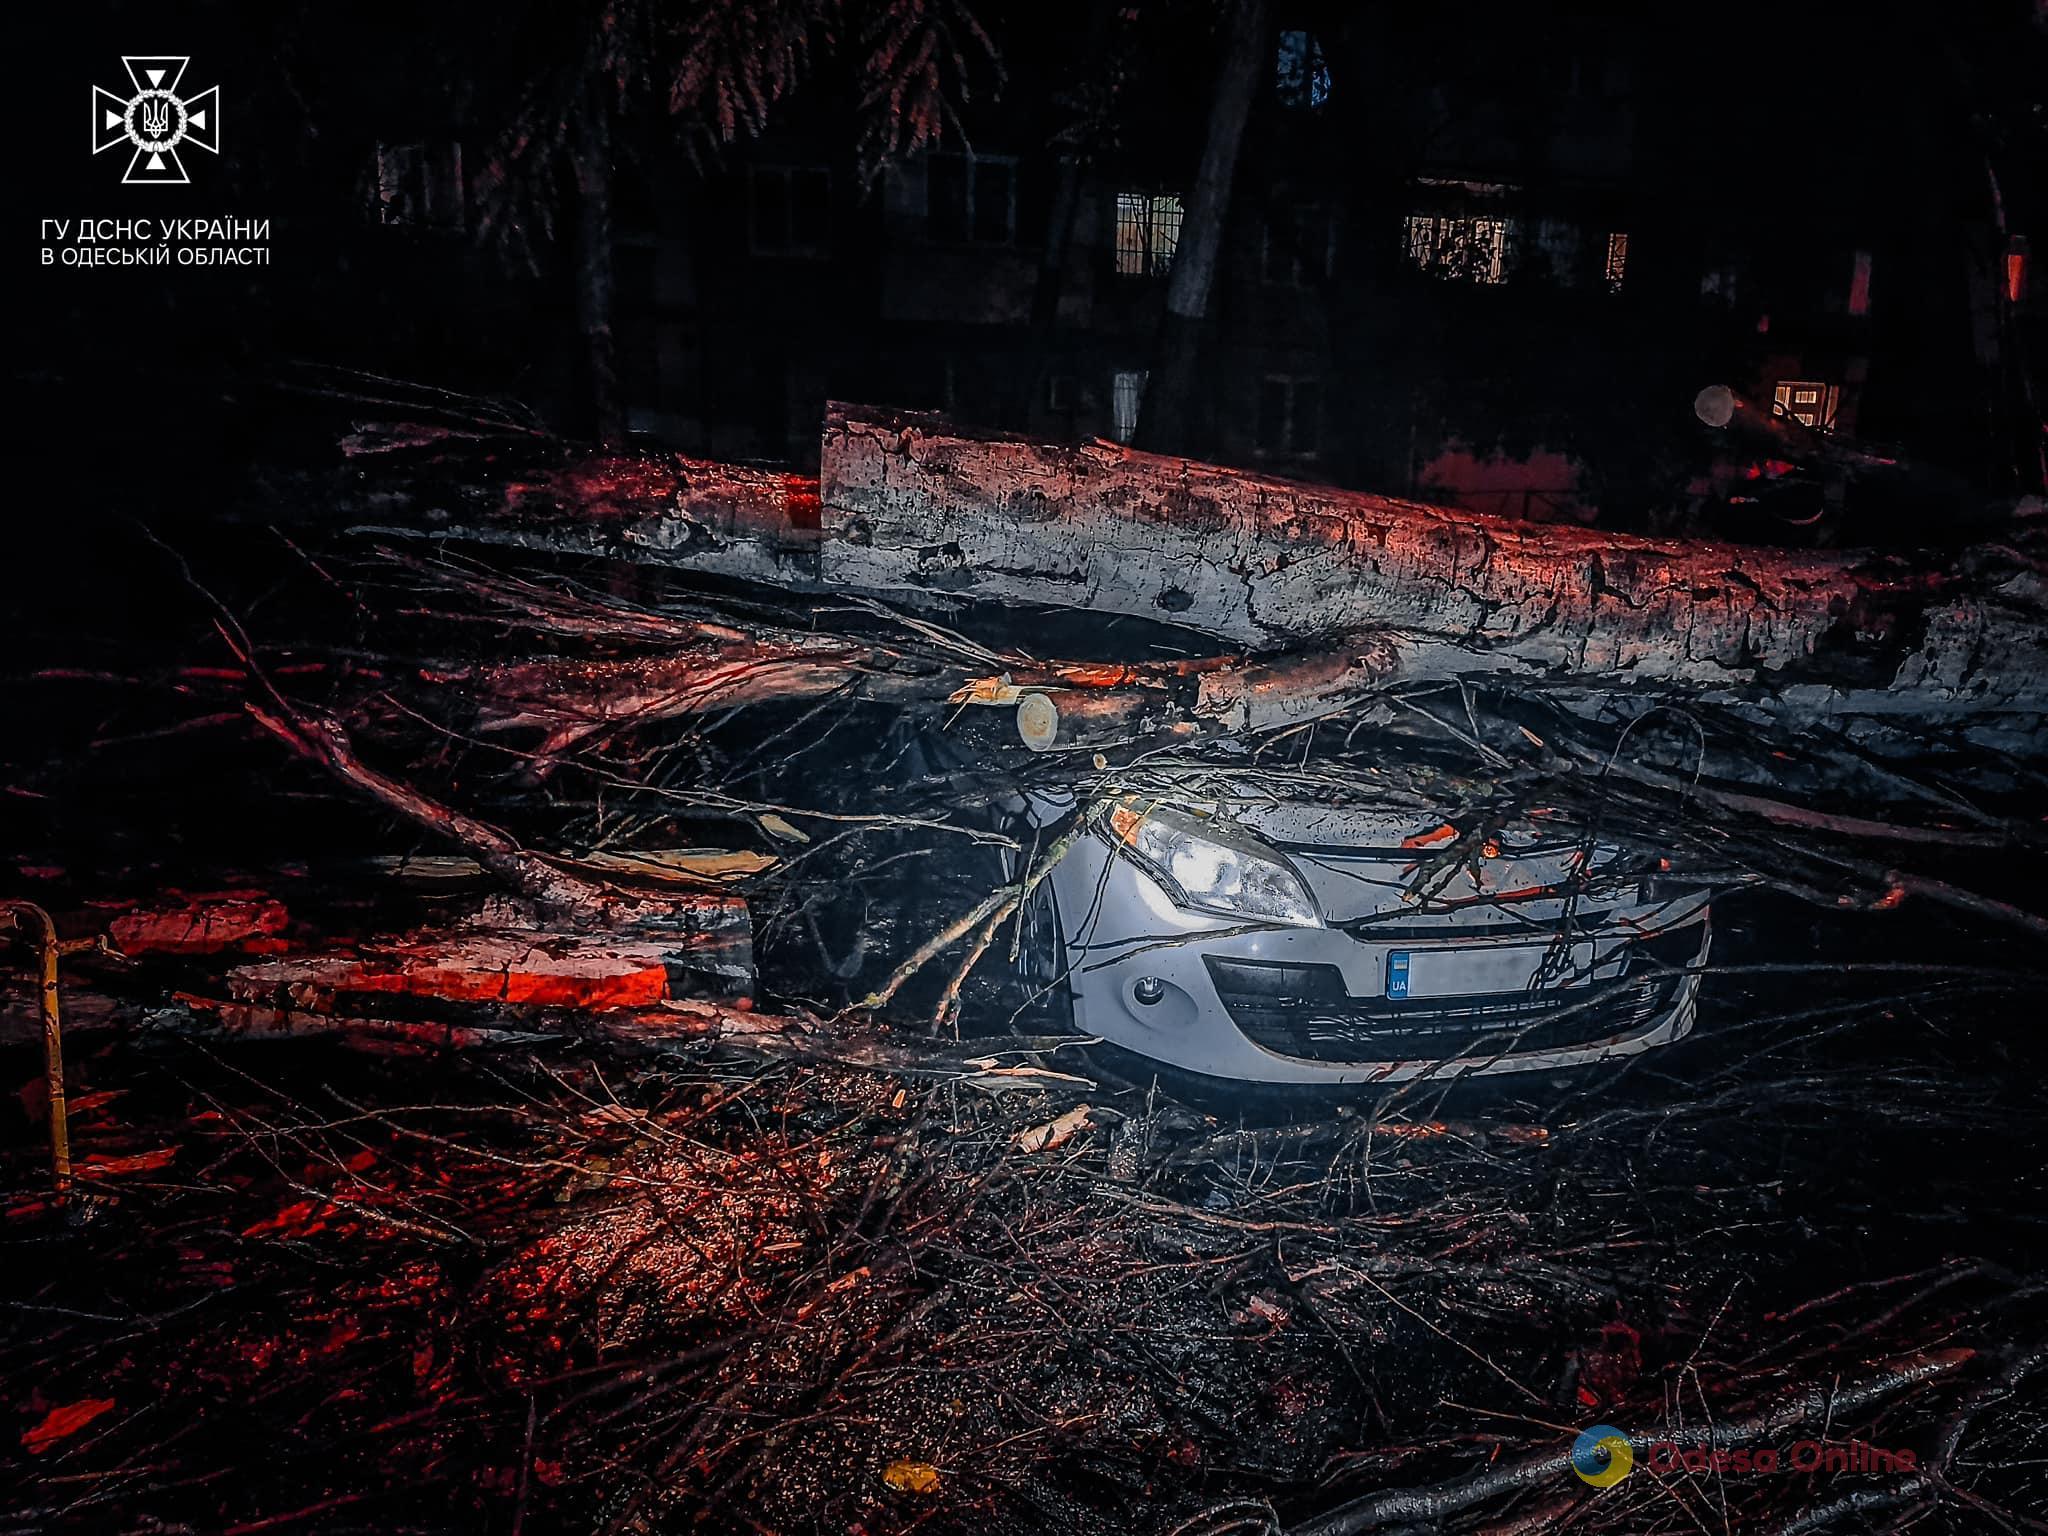 В Одессе из-за непогоды упали более полусотни деревьев (фото)